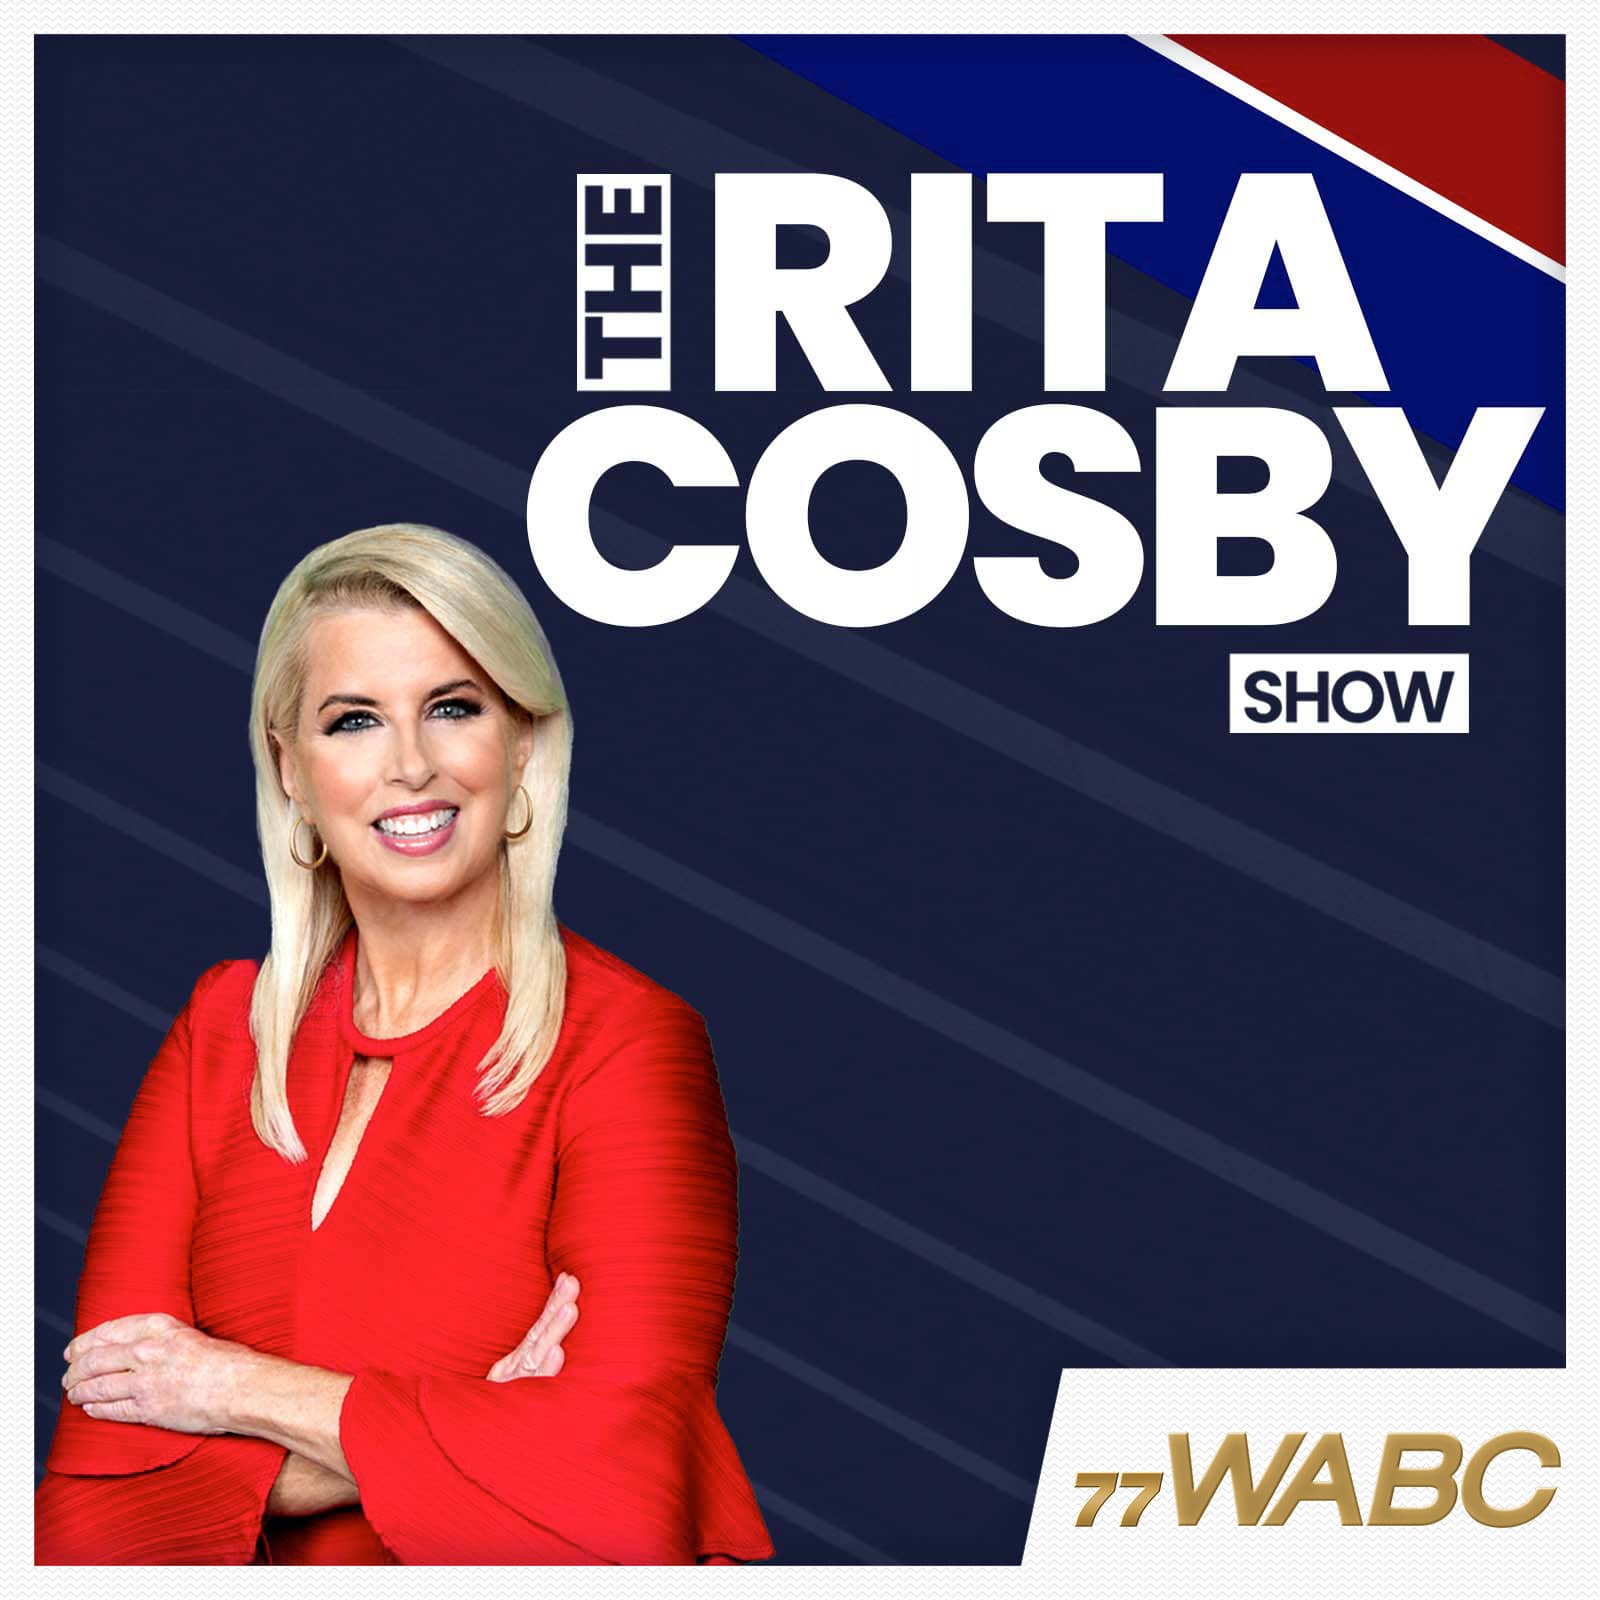 rita-cosby-podcast-new-logo-350